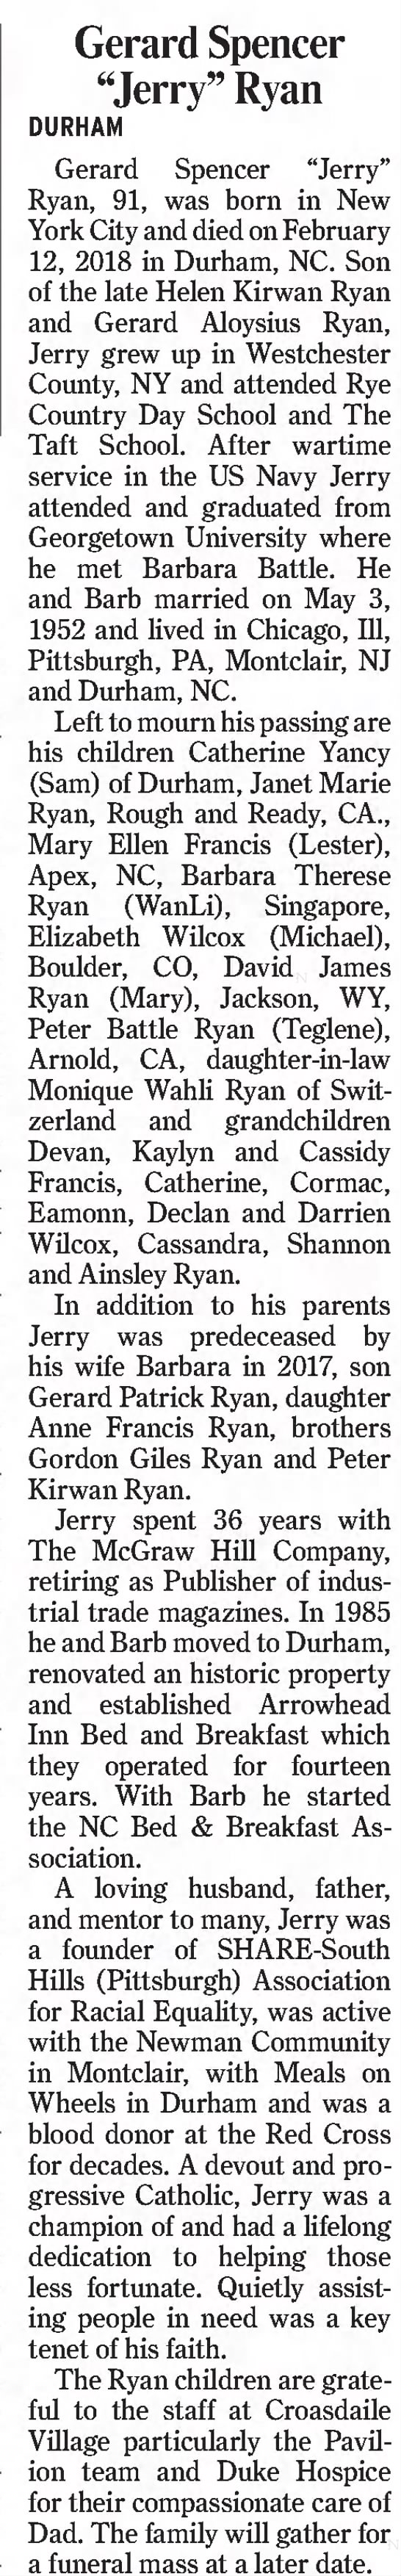 Obituary for Gerard Spencer Ryan - 